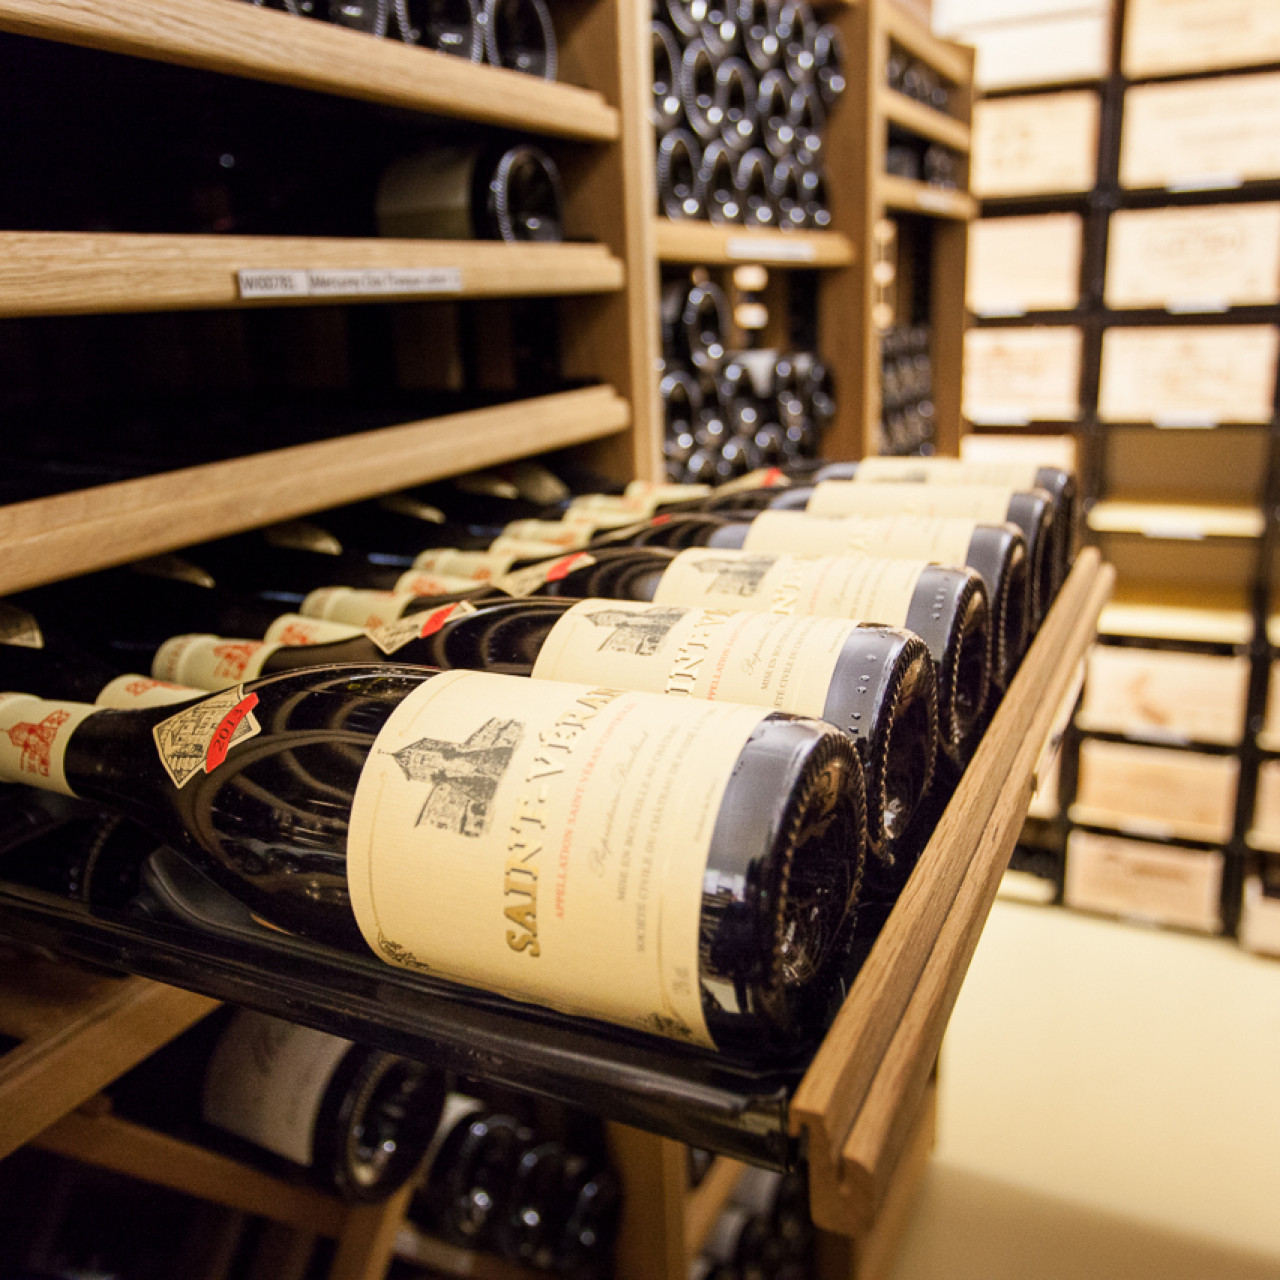 Sliding shelf modules for categorising wine bottles - Modulothèque